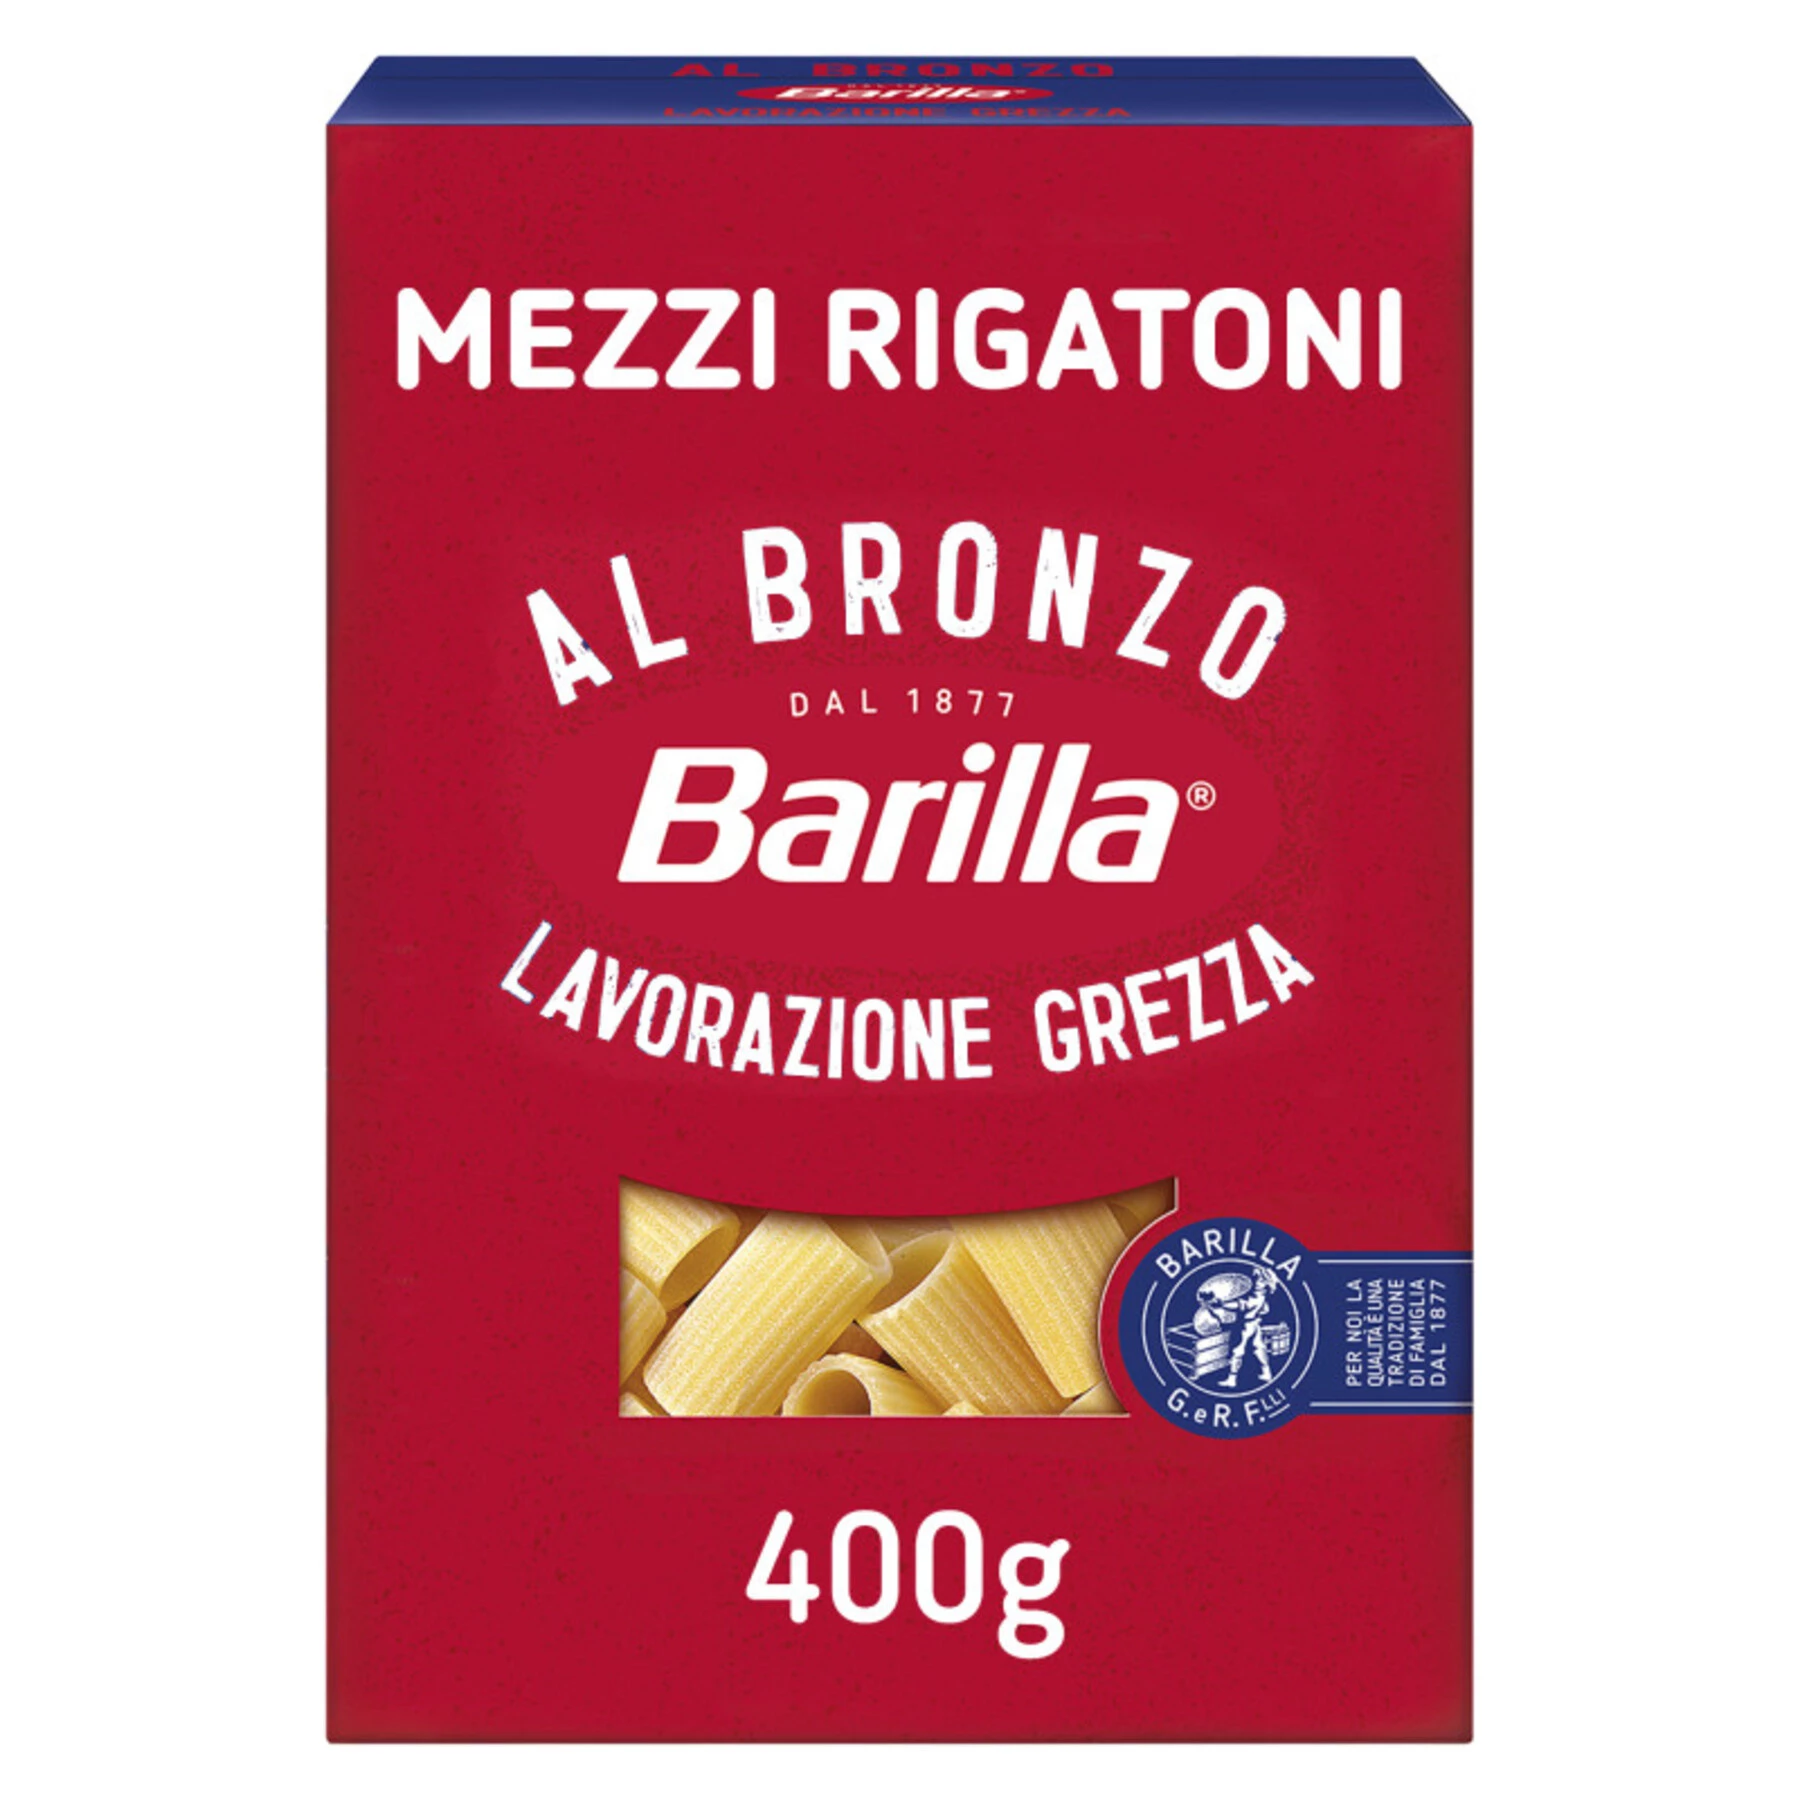 Pâtes Al Bronzo Mezzi Rigatoni, 400g - BARILLA